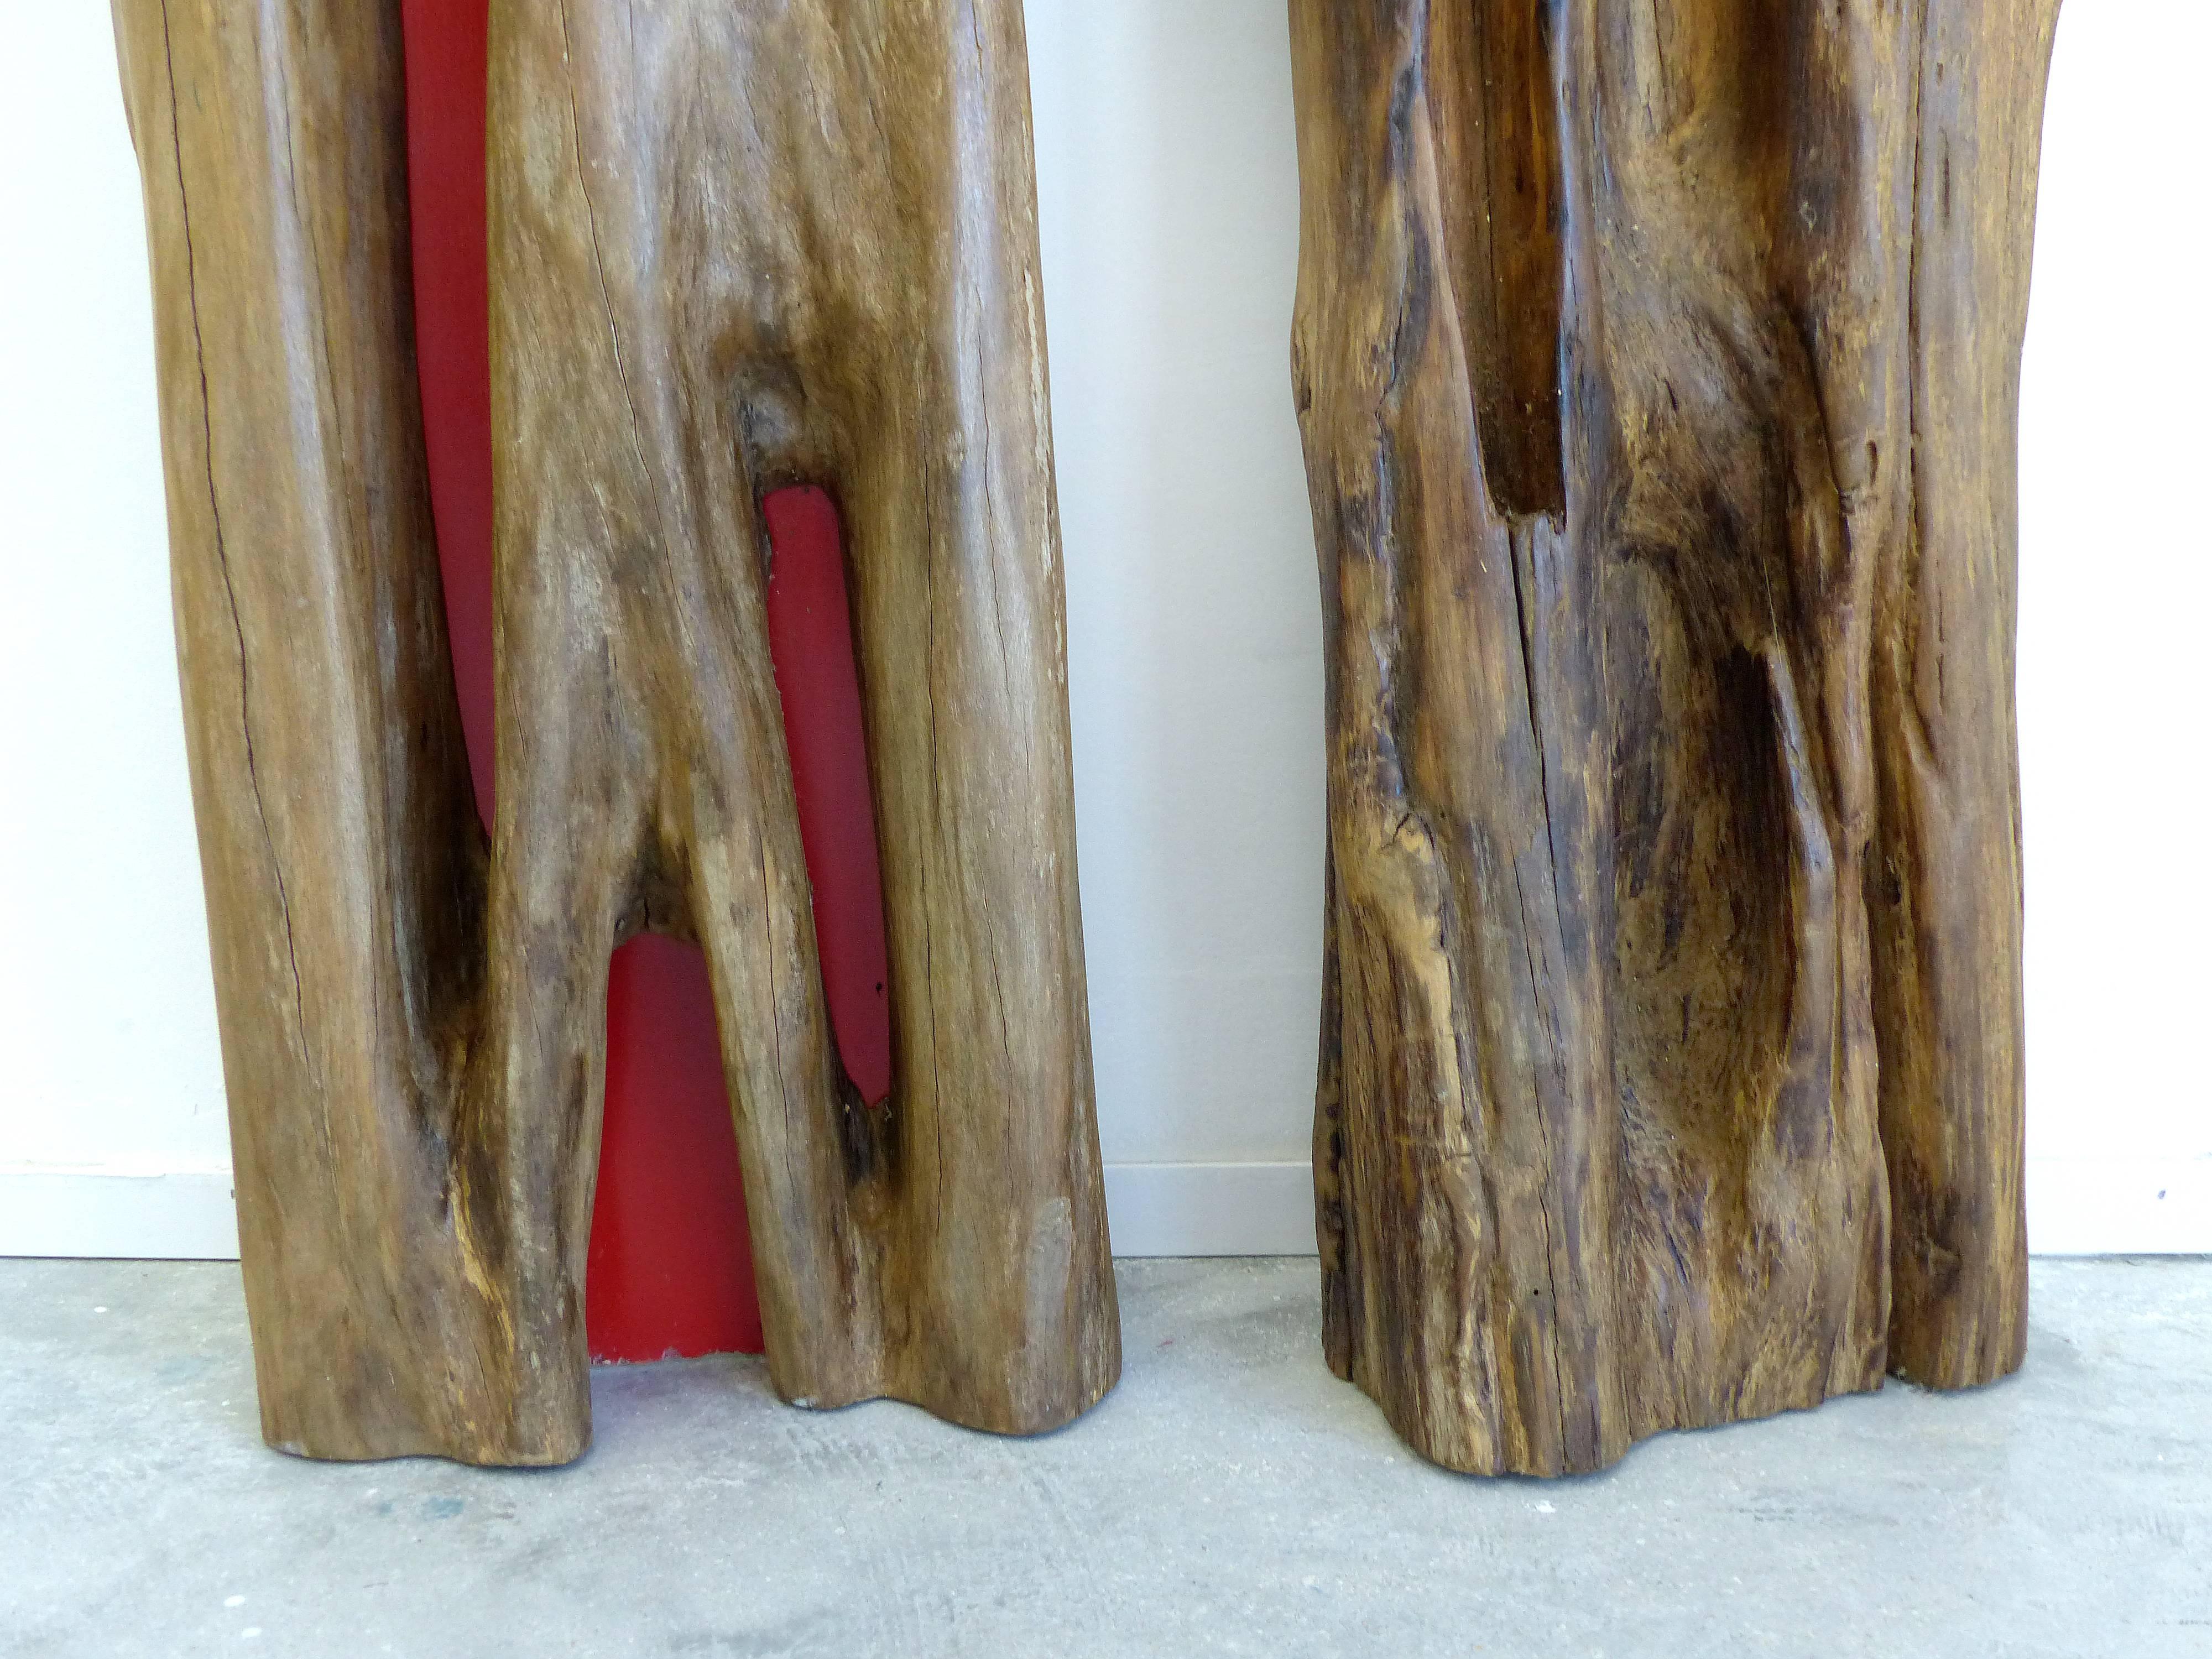 Enamel Pair of Reclaimed Wood Log Sculptures by Valeria Totti